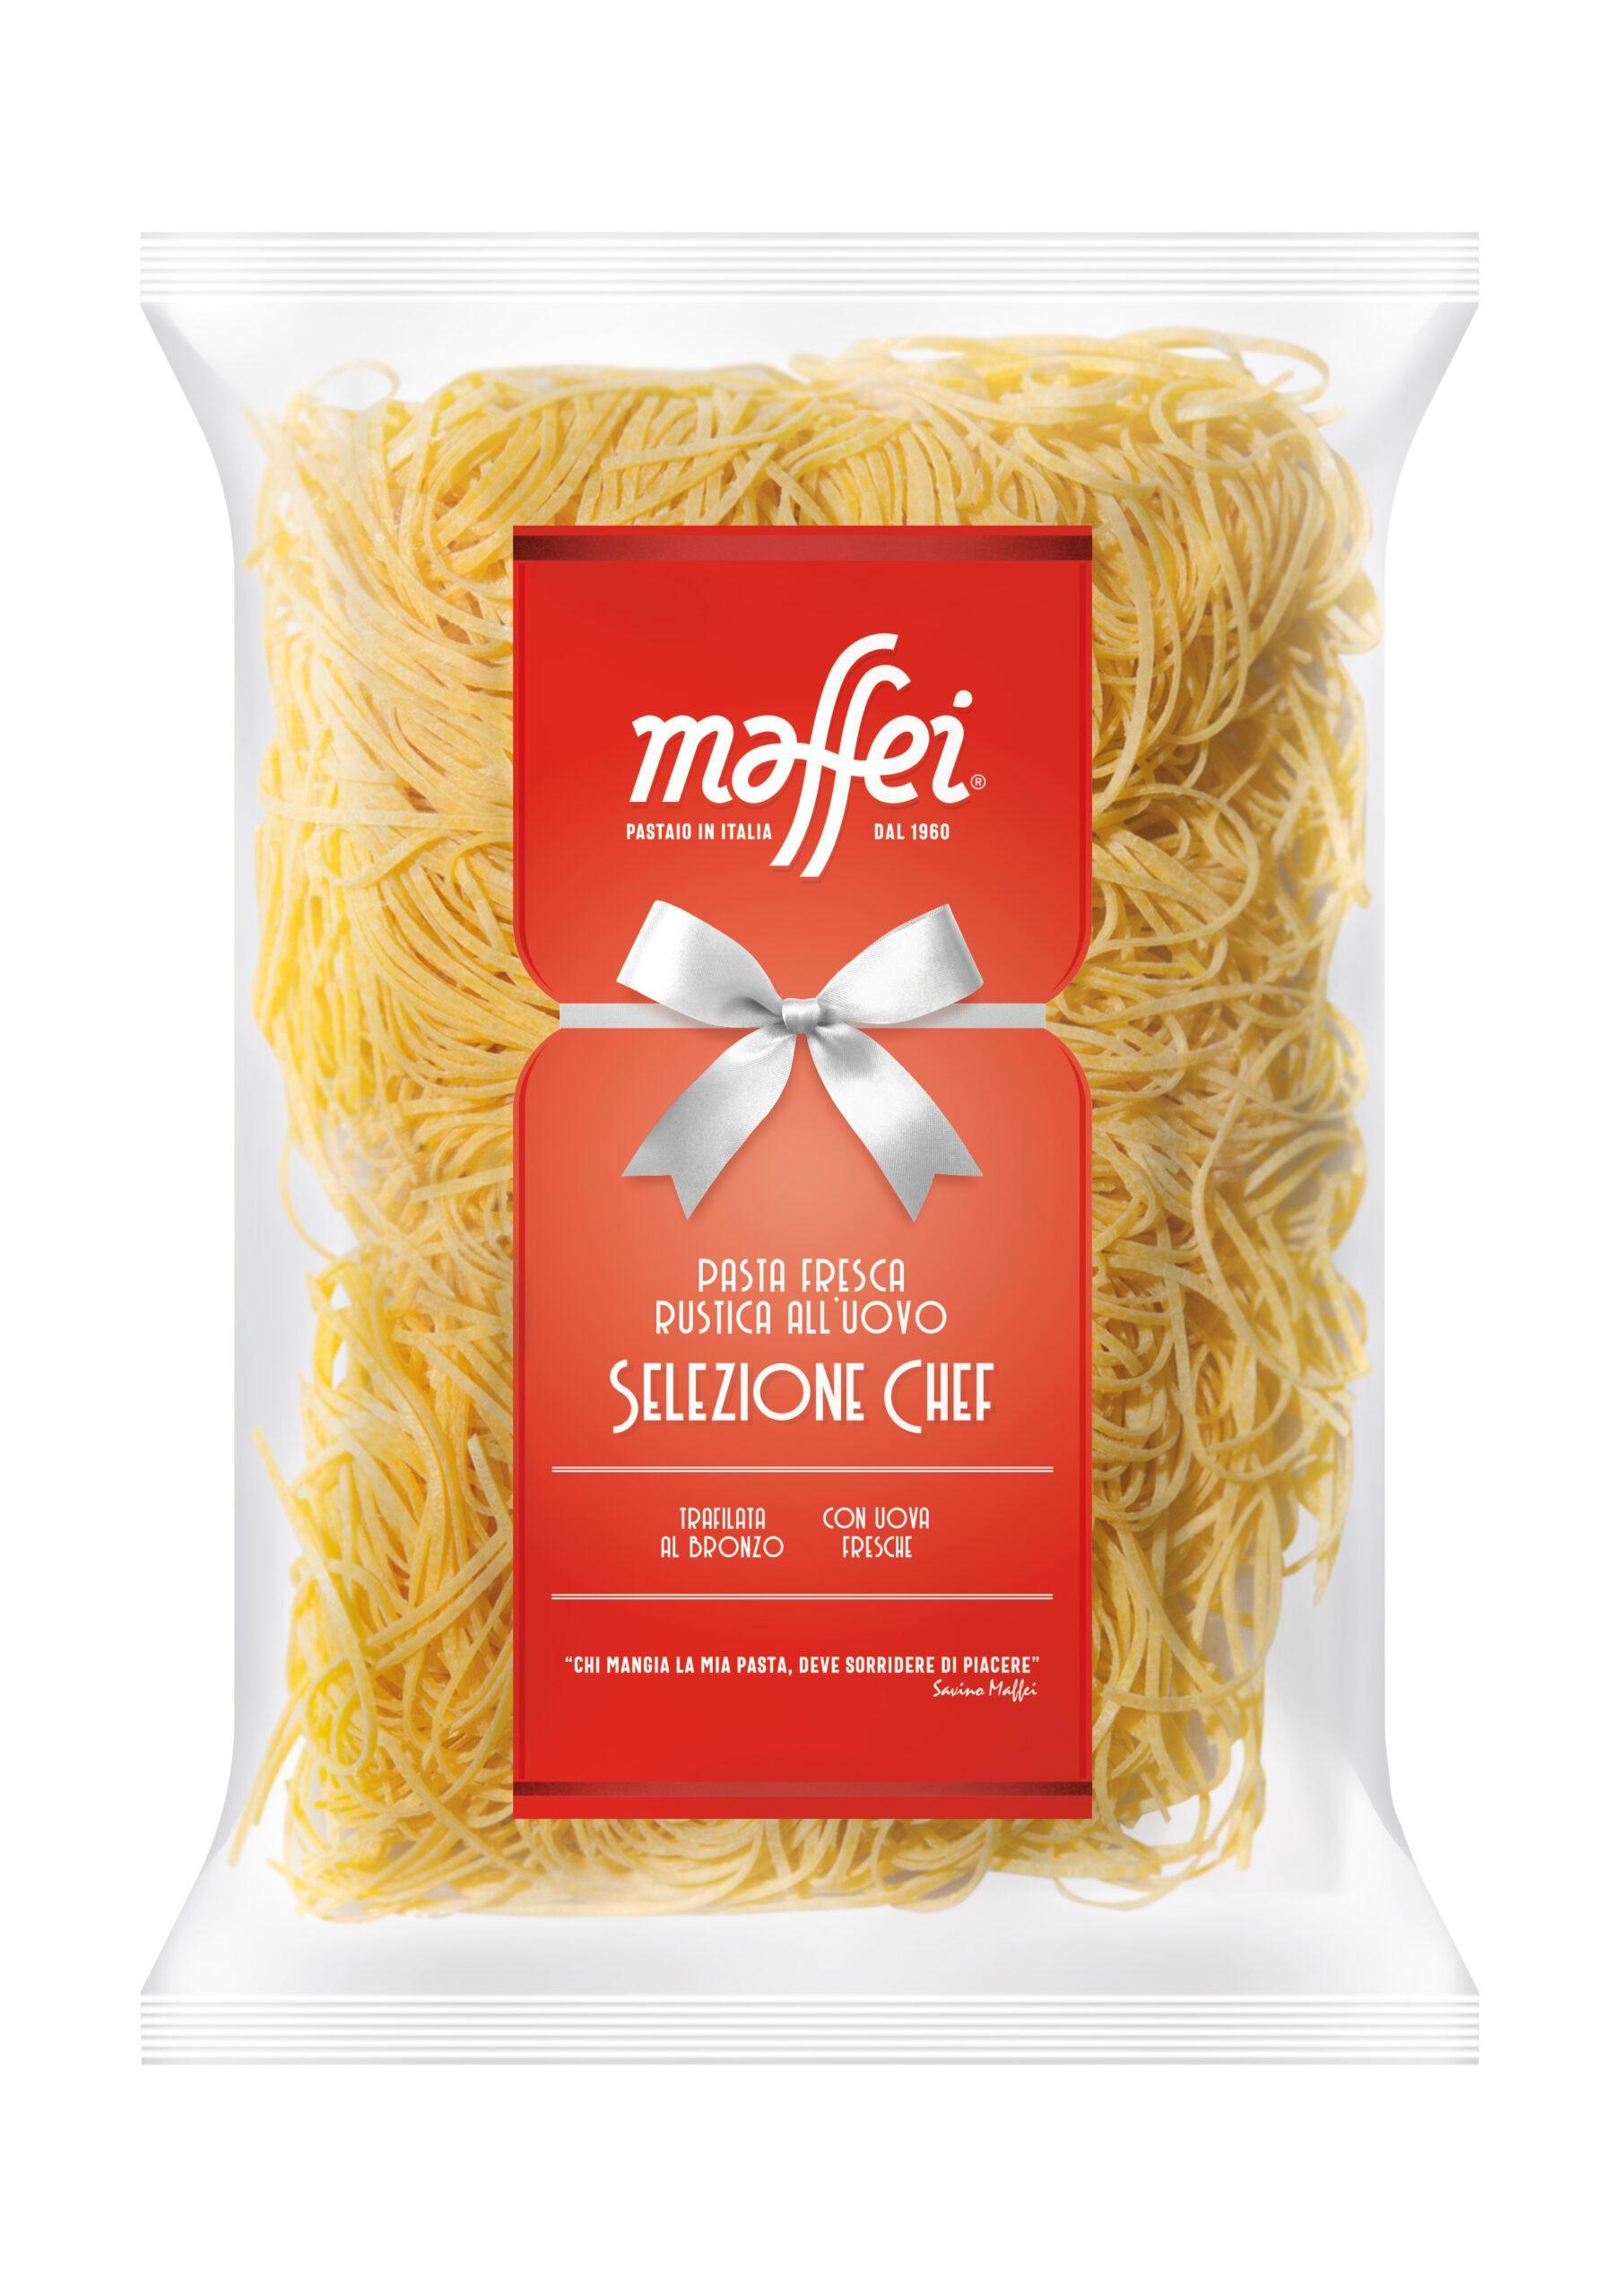 Spaghetti alla Chitarra 900g – Pastaio Maffei La pasta fresca